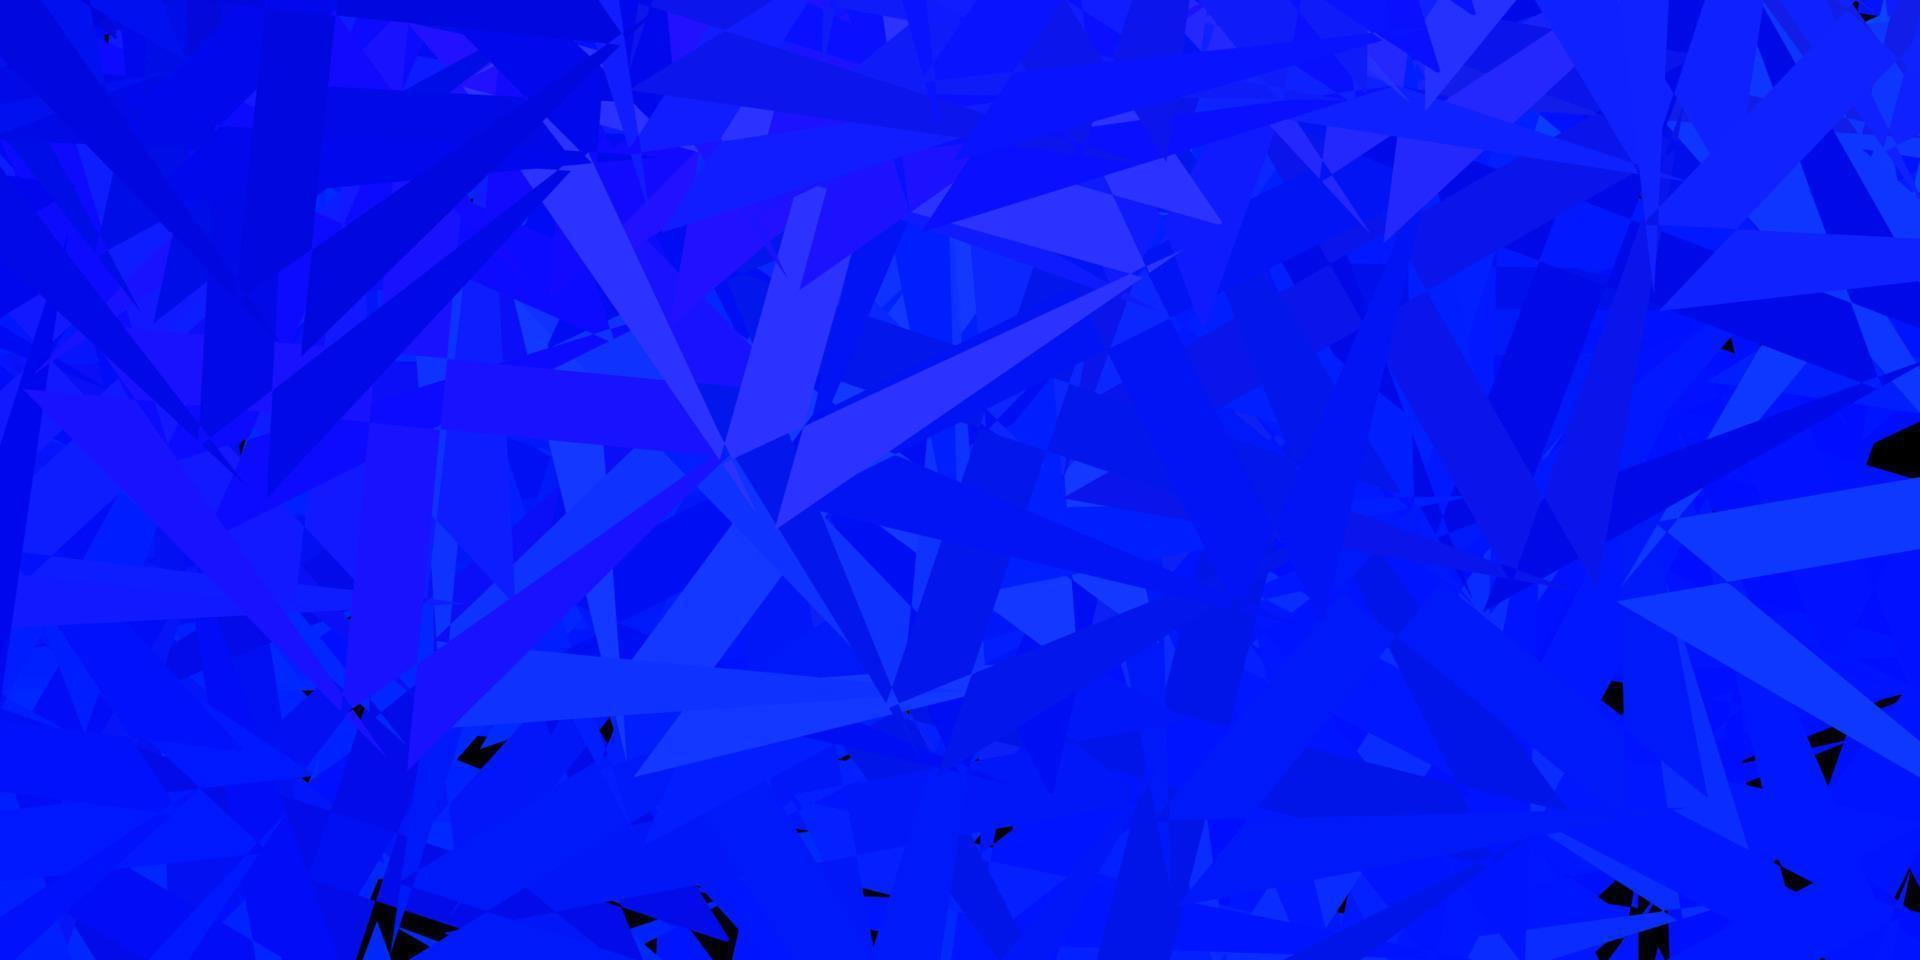 hellblaue Vektorschablone mit Dreiecksformen. vektor